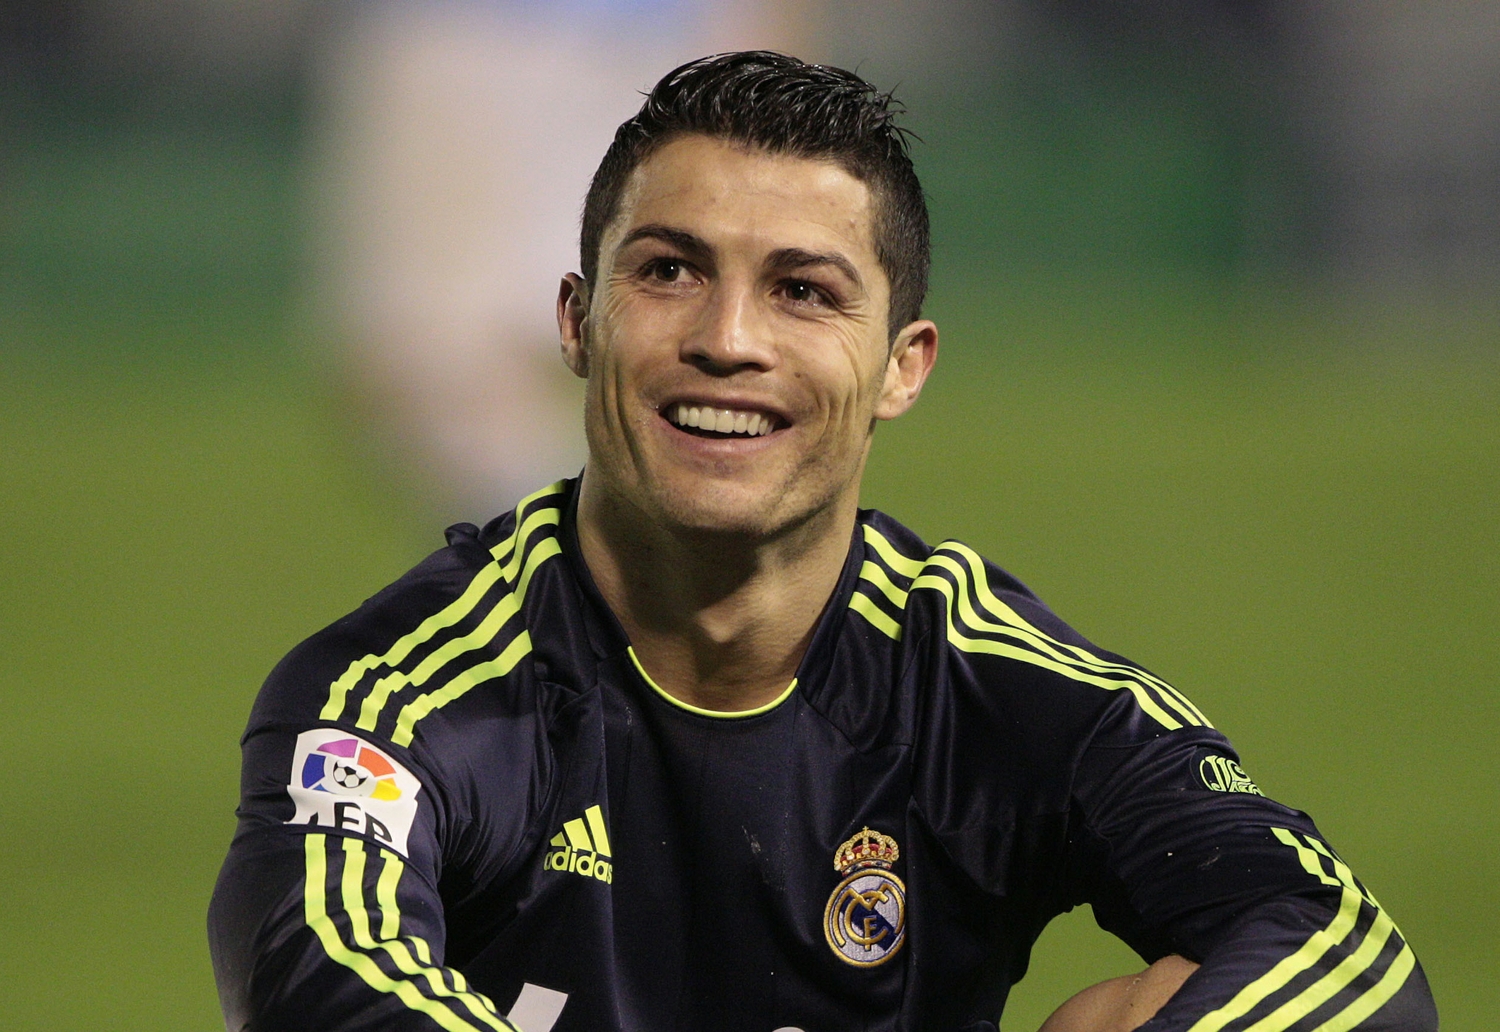 Portuguese FootBall Player Cristiano Ronaldo bio